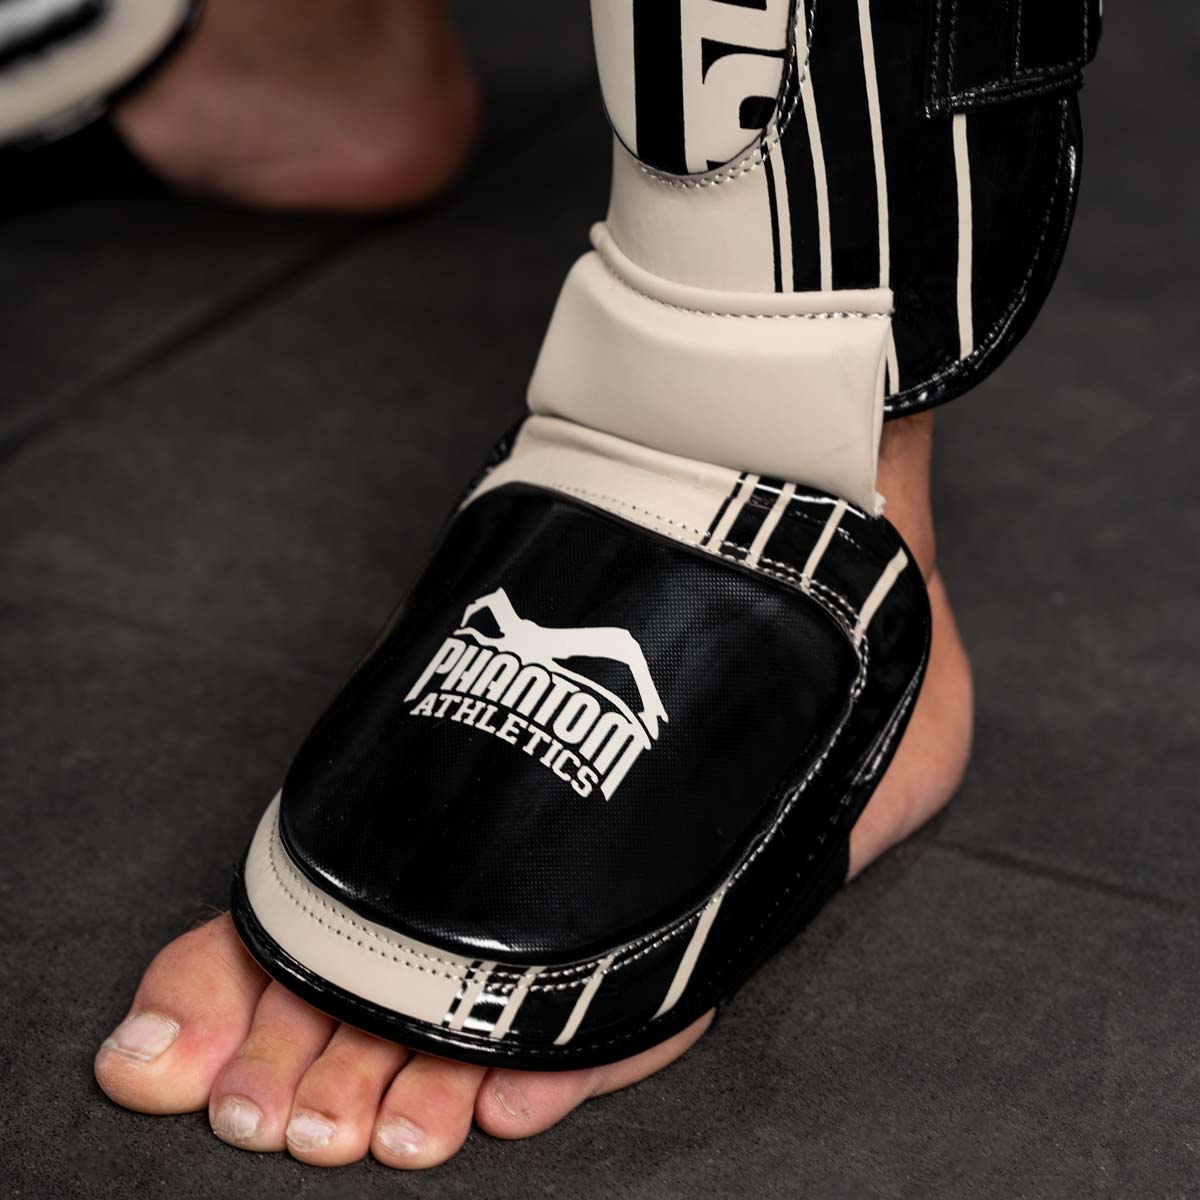 Die Apex Hybrid MMA Schienbeinschoner verfügen über ein dickes Vorderfußpadding zum Schutz der Mittelfußknochen im Training und Sparring.